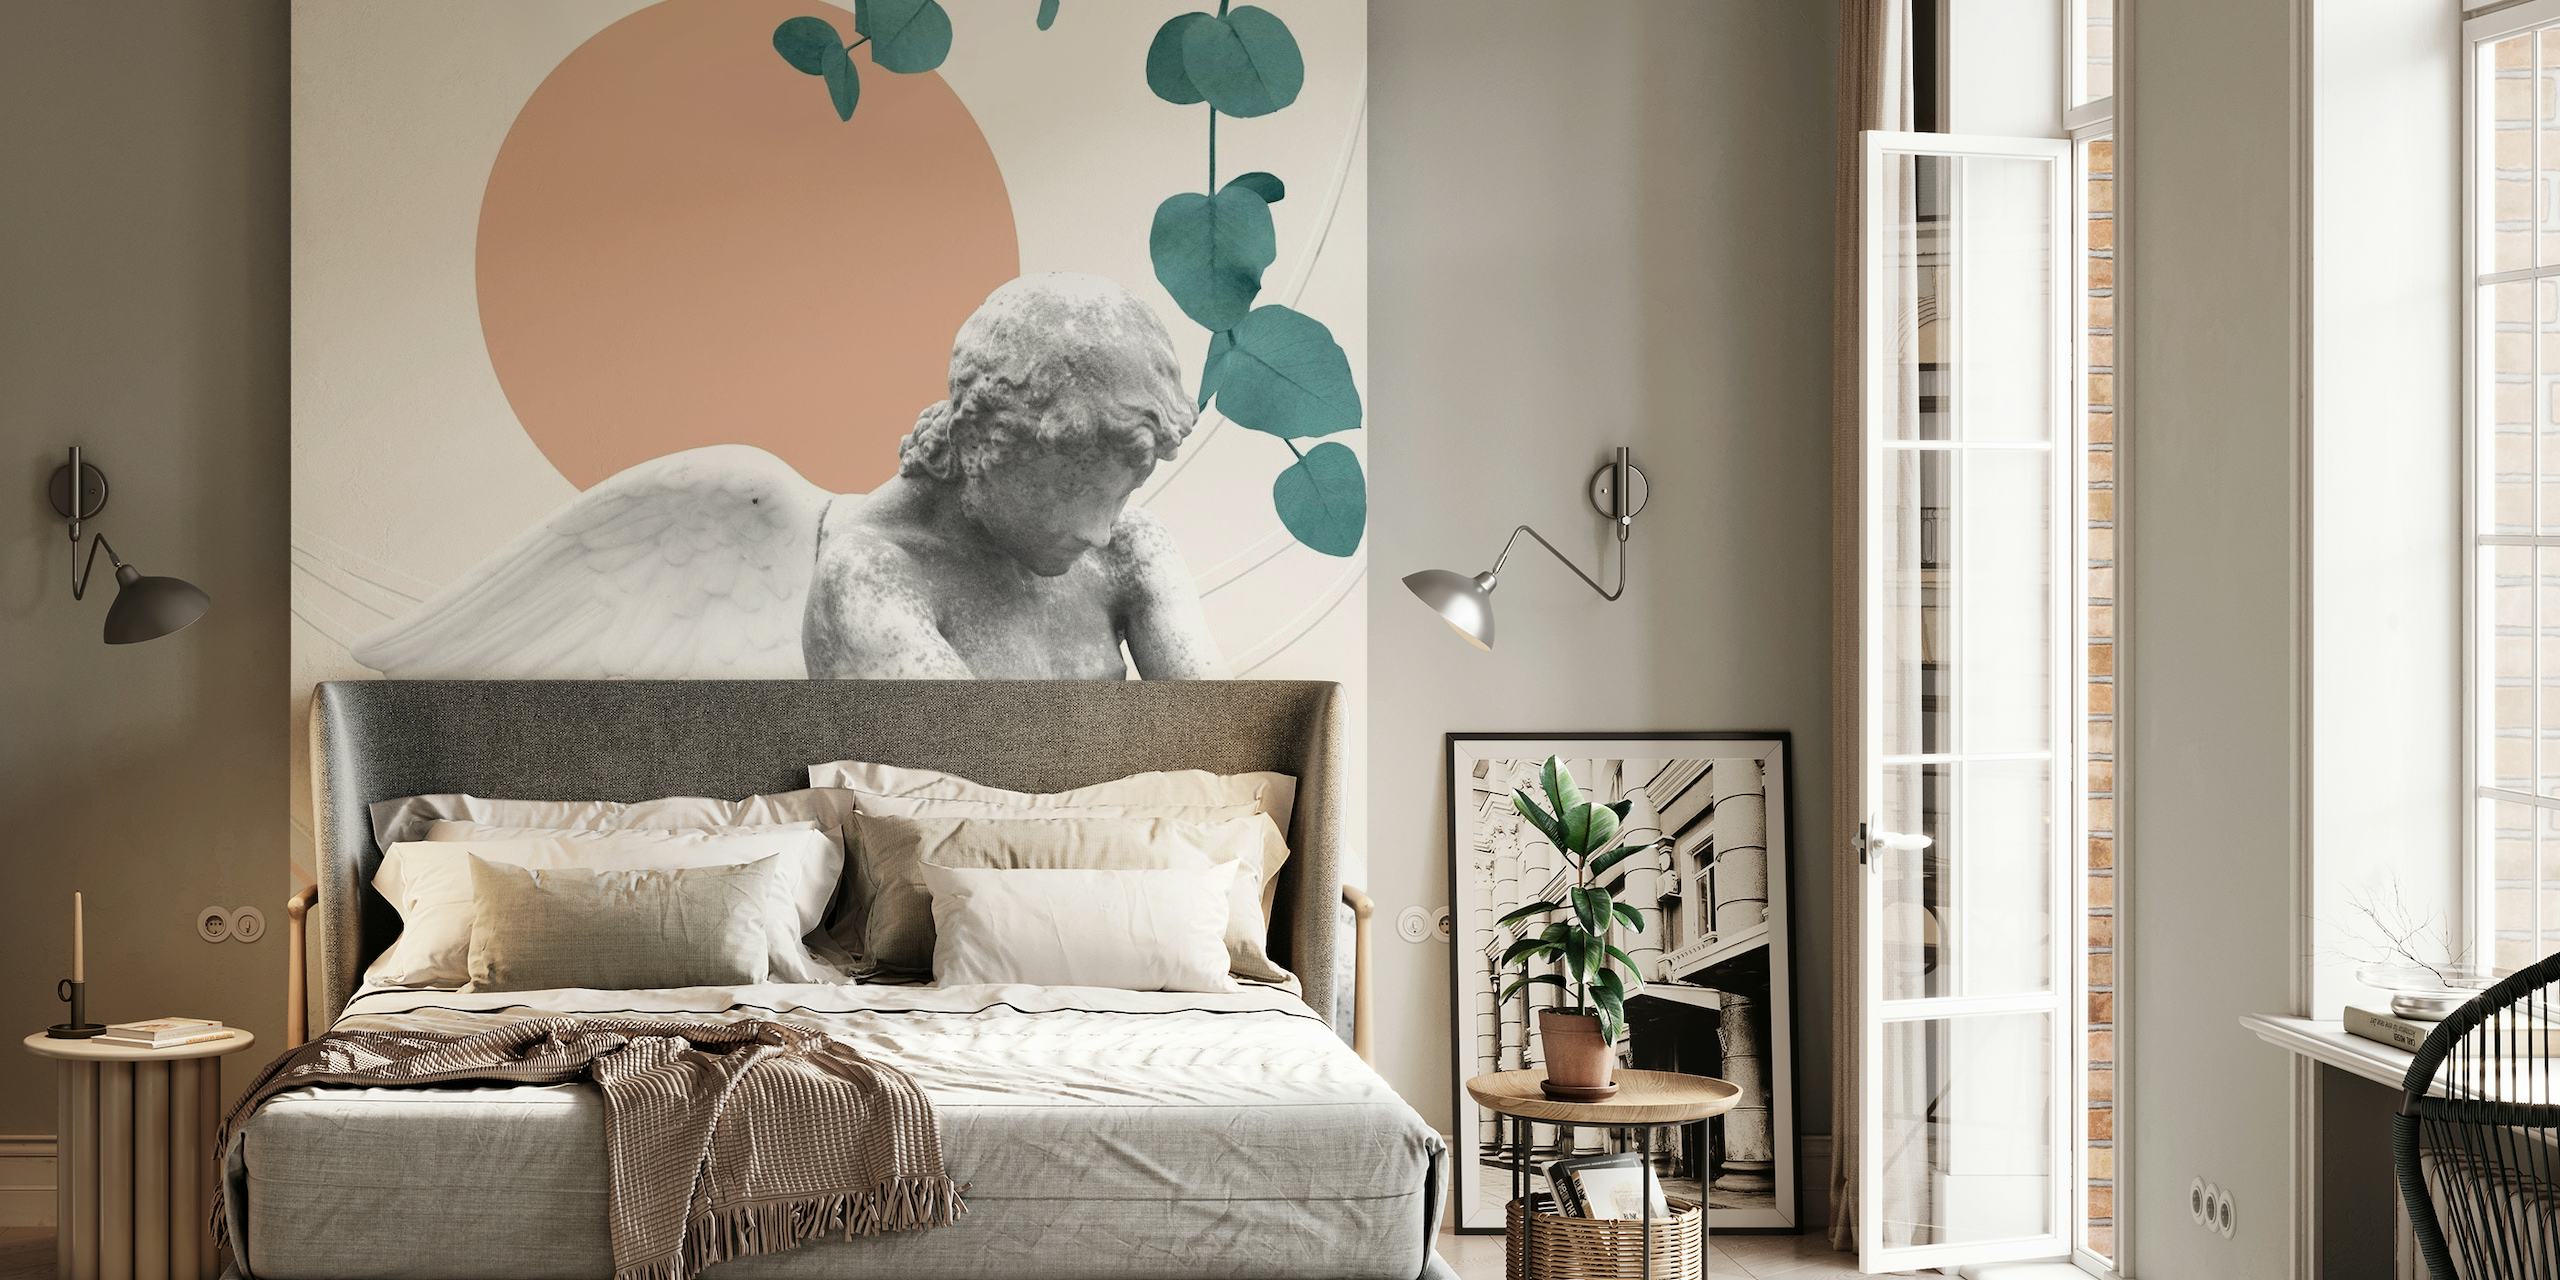 Eros Abstract Finesse fotobehang met cherubijn, marmertexturen, geometrische vormen en botanische elementen.